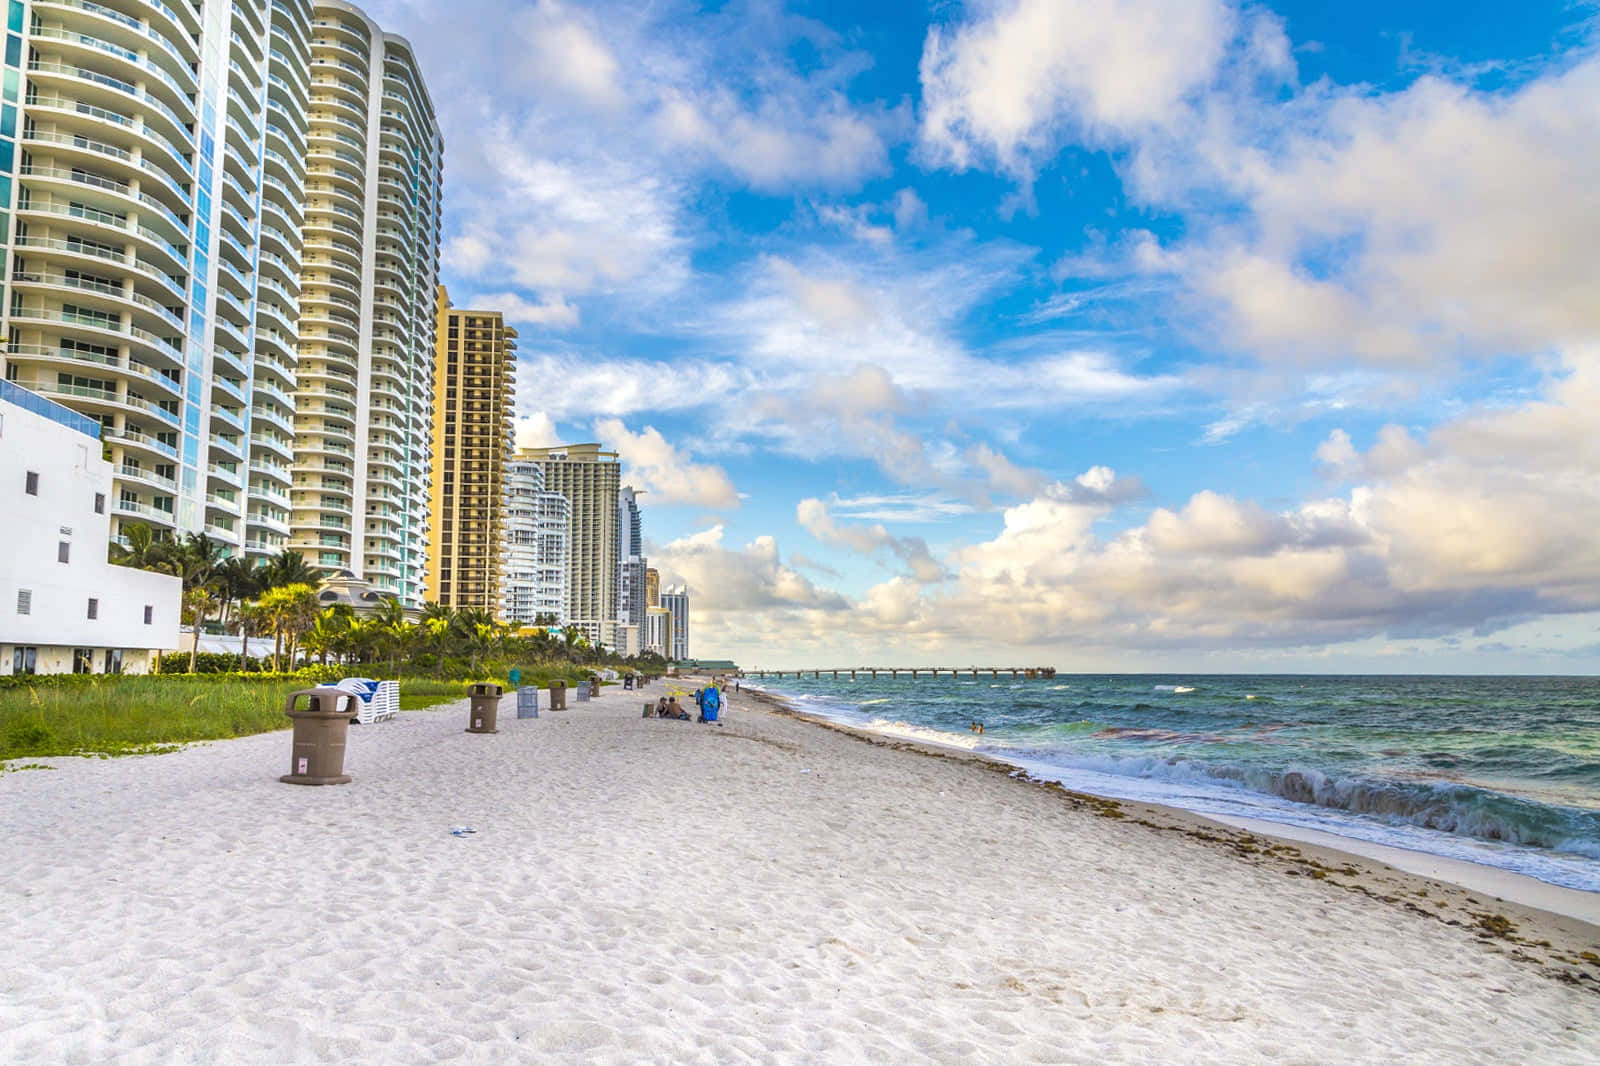 Imagende Miami Beach Con Cielo Nublado Y Azul.